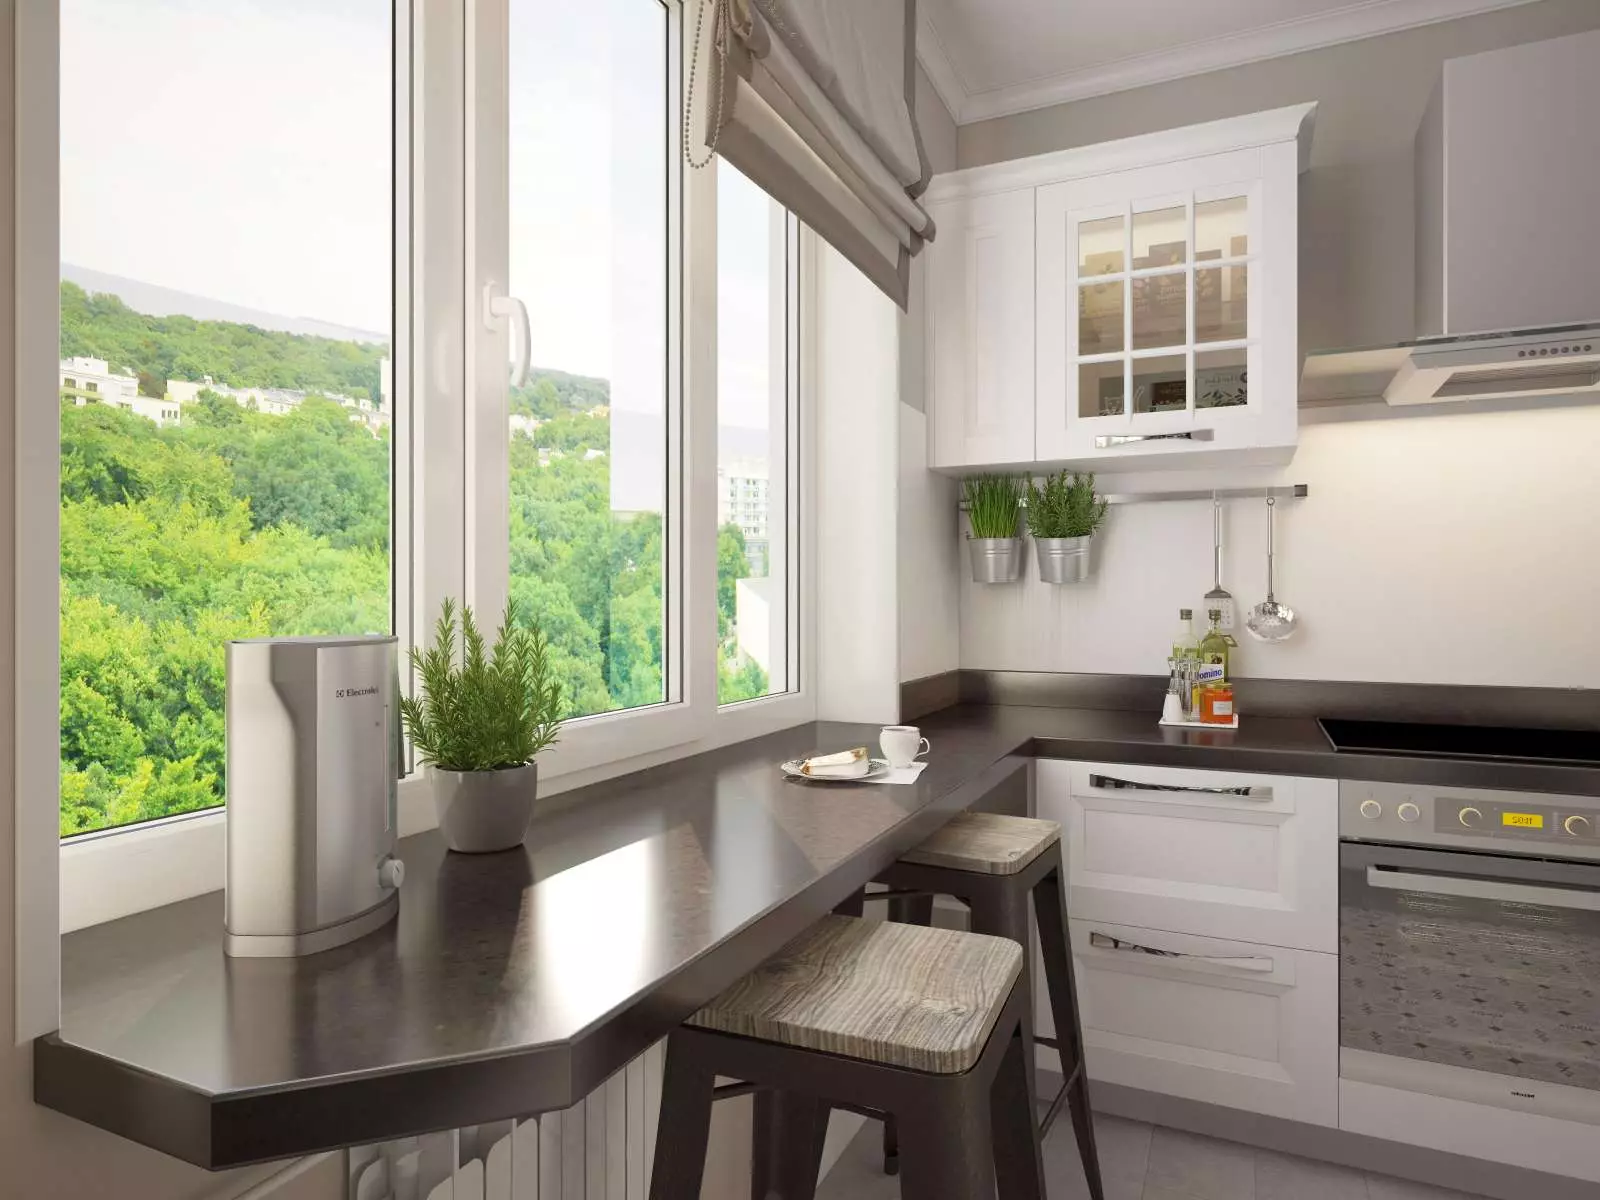 Dapur dengan jendela di area kerja (44 foto): Pilihan desain dan membuat desain interior dapur dengan jendela di atas permukaan kerja. Bagaimana cara menggunakan jendela di ruang dapur? Contoh yang indah 9838_4